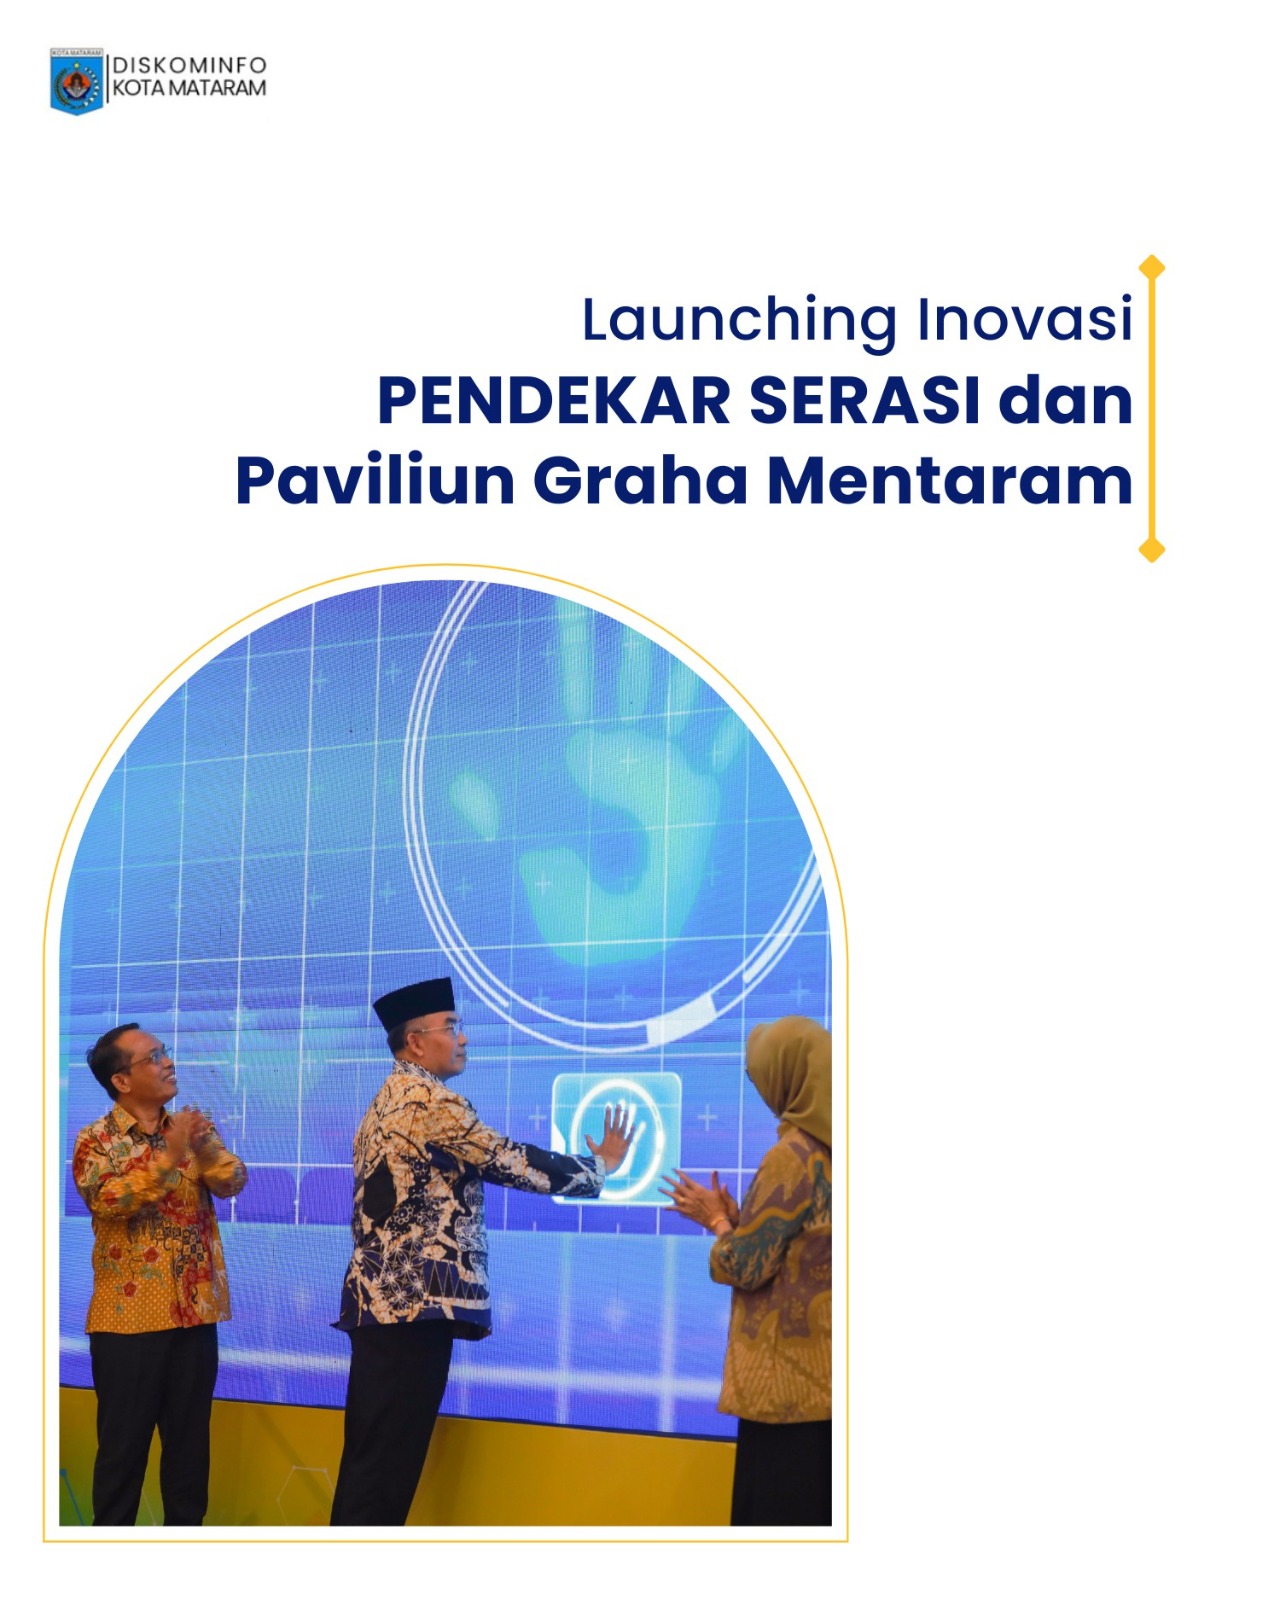 Launching Inovasi Pendekar Serasi Dan Paviliun Graha Mentaram